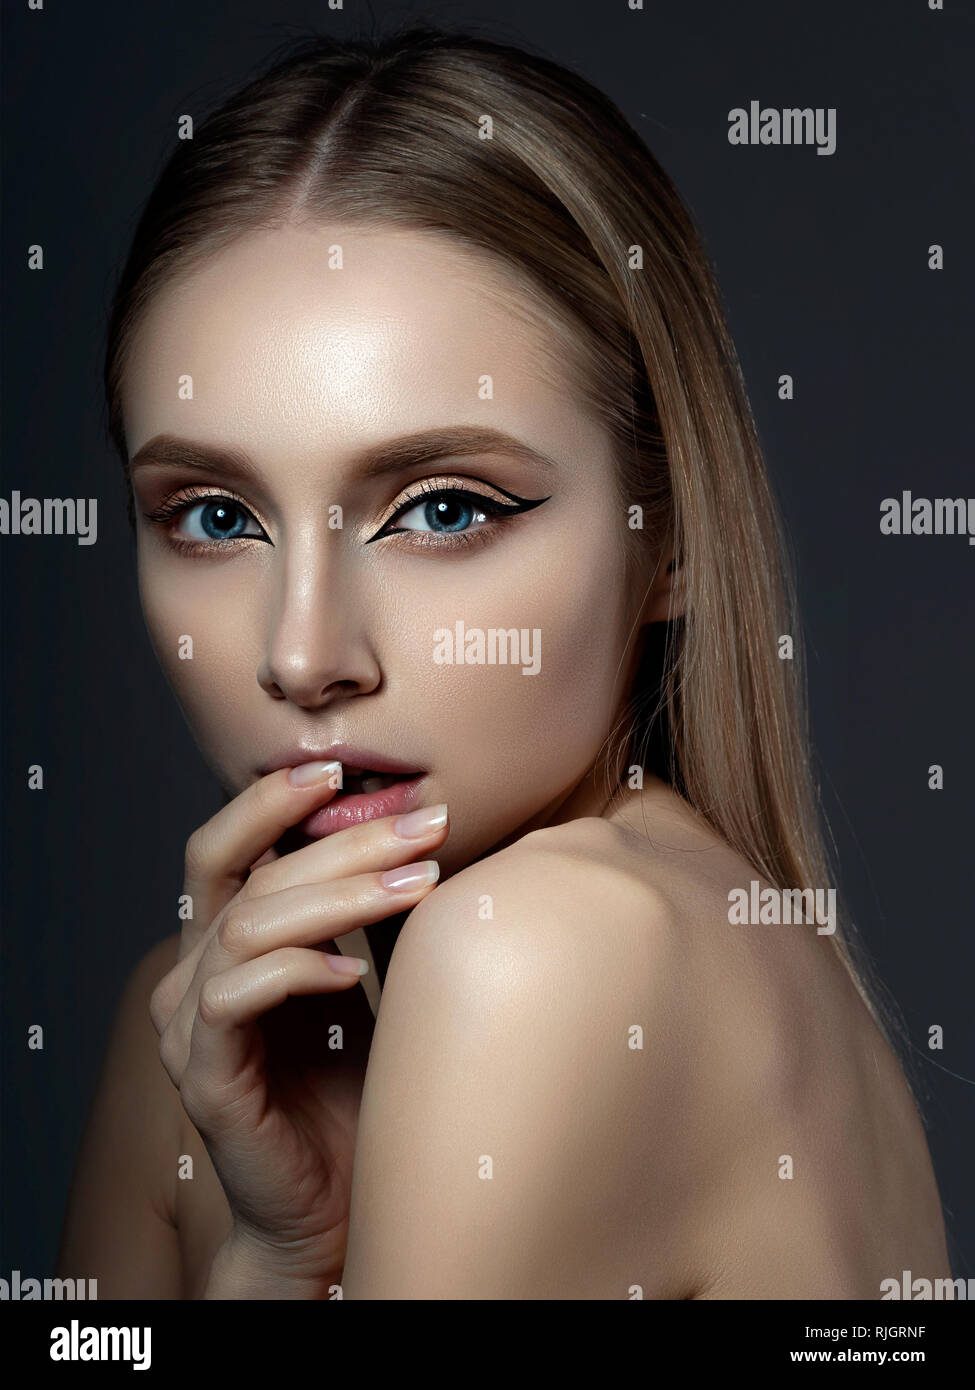 beautiful woman with modern fashion makeup Stock Photo - Alamy